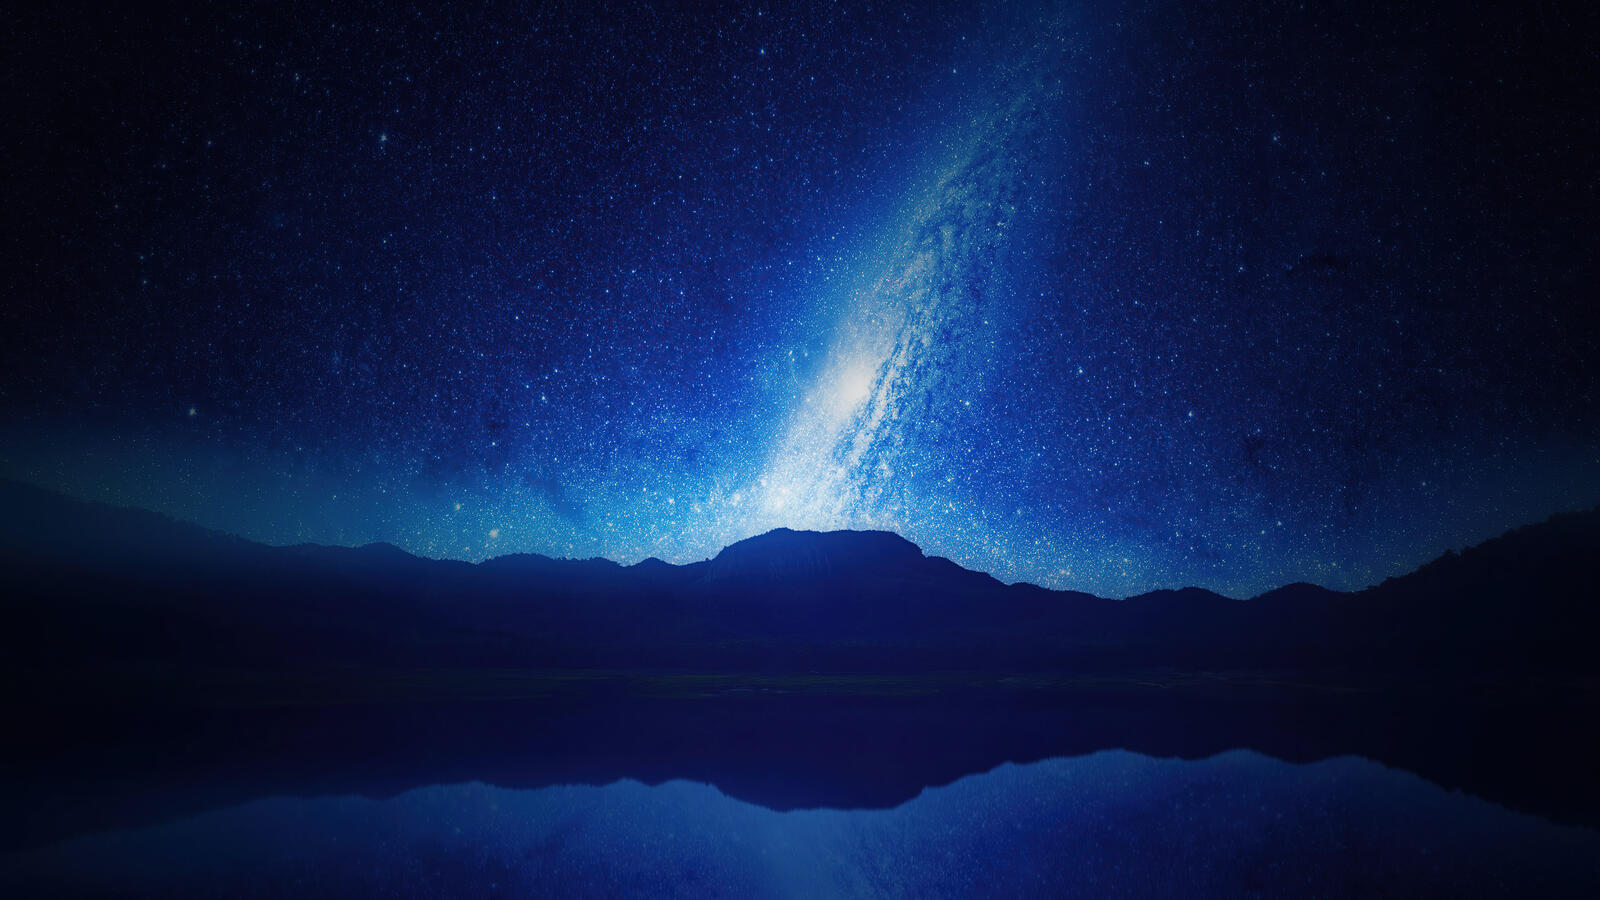 Бесплатное фото Ночное небо с млечным путем